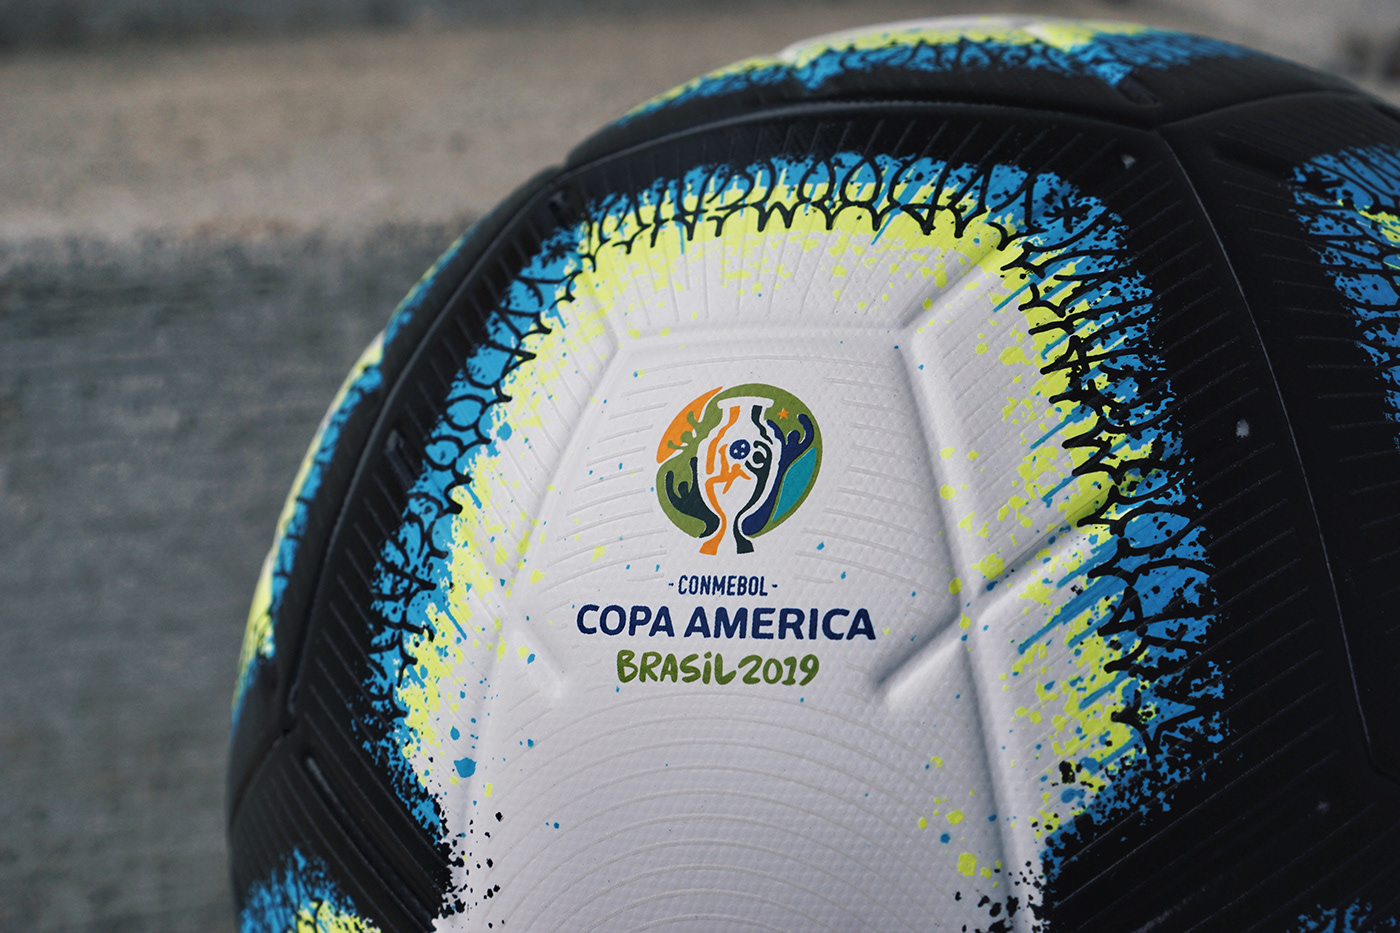 Nike football copa america soccer merlin rabisco ball Graffiti design graphic